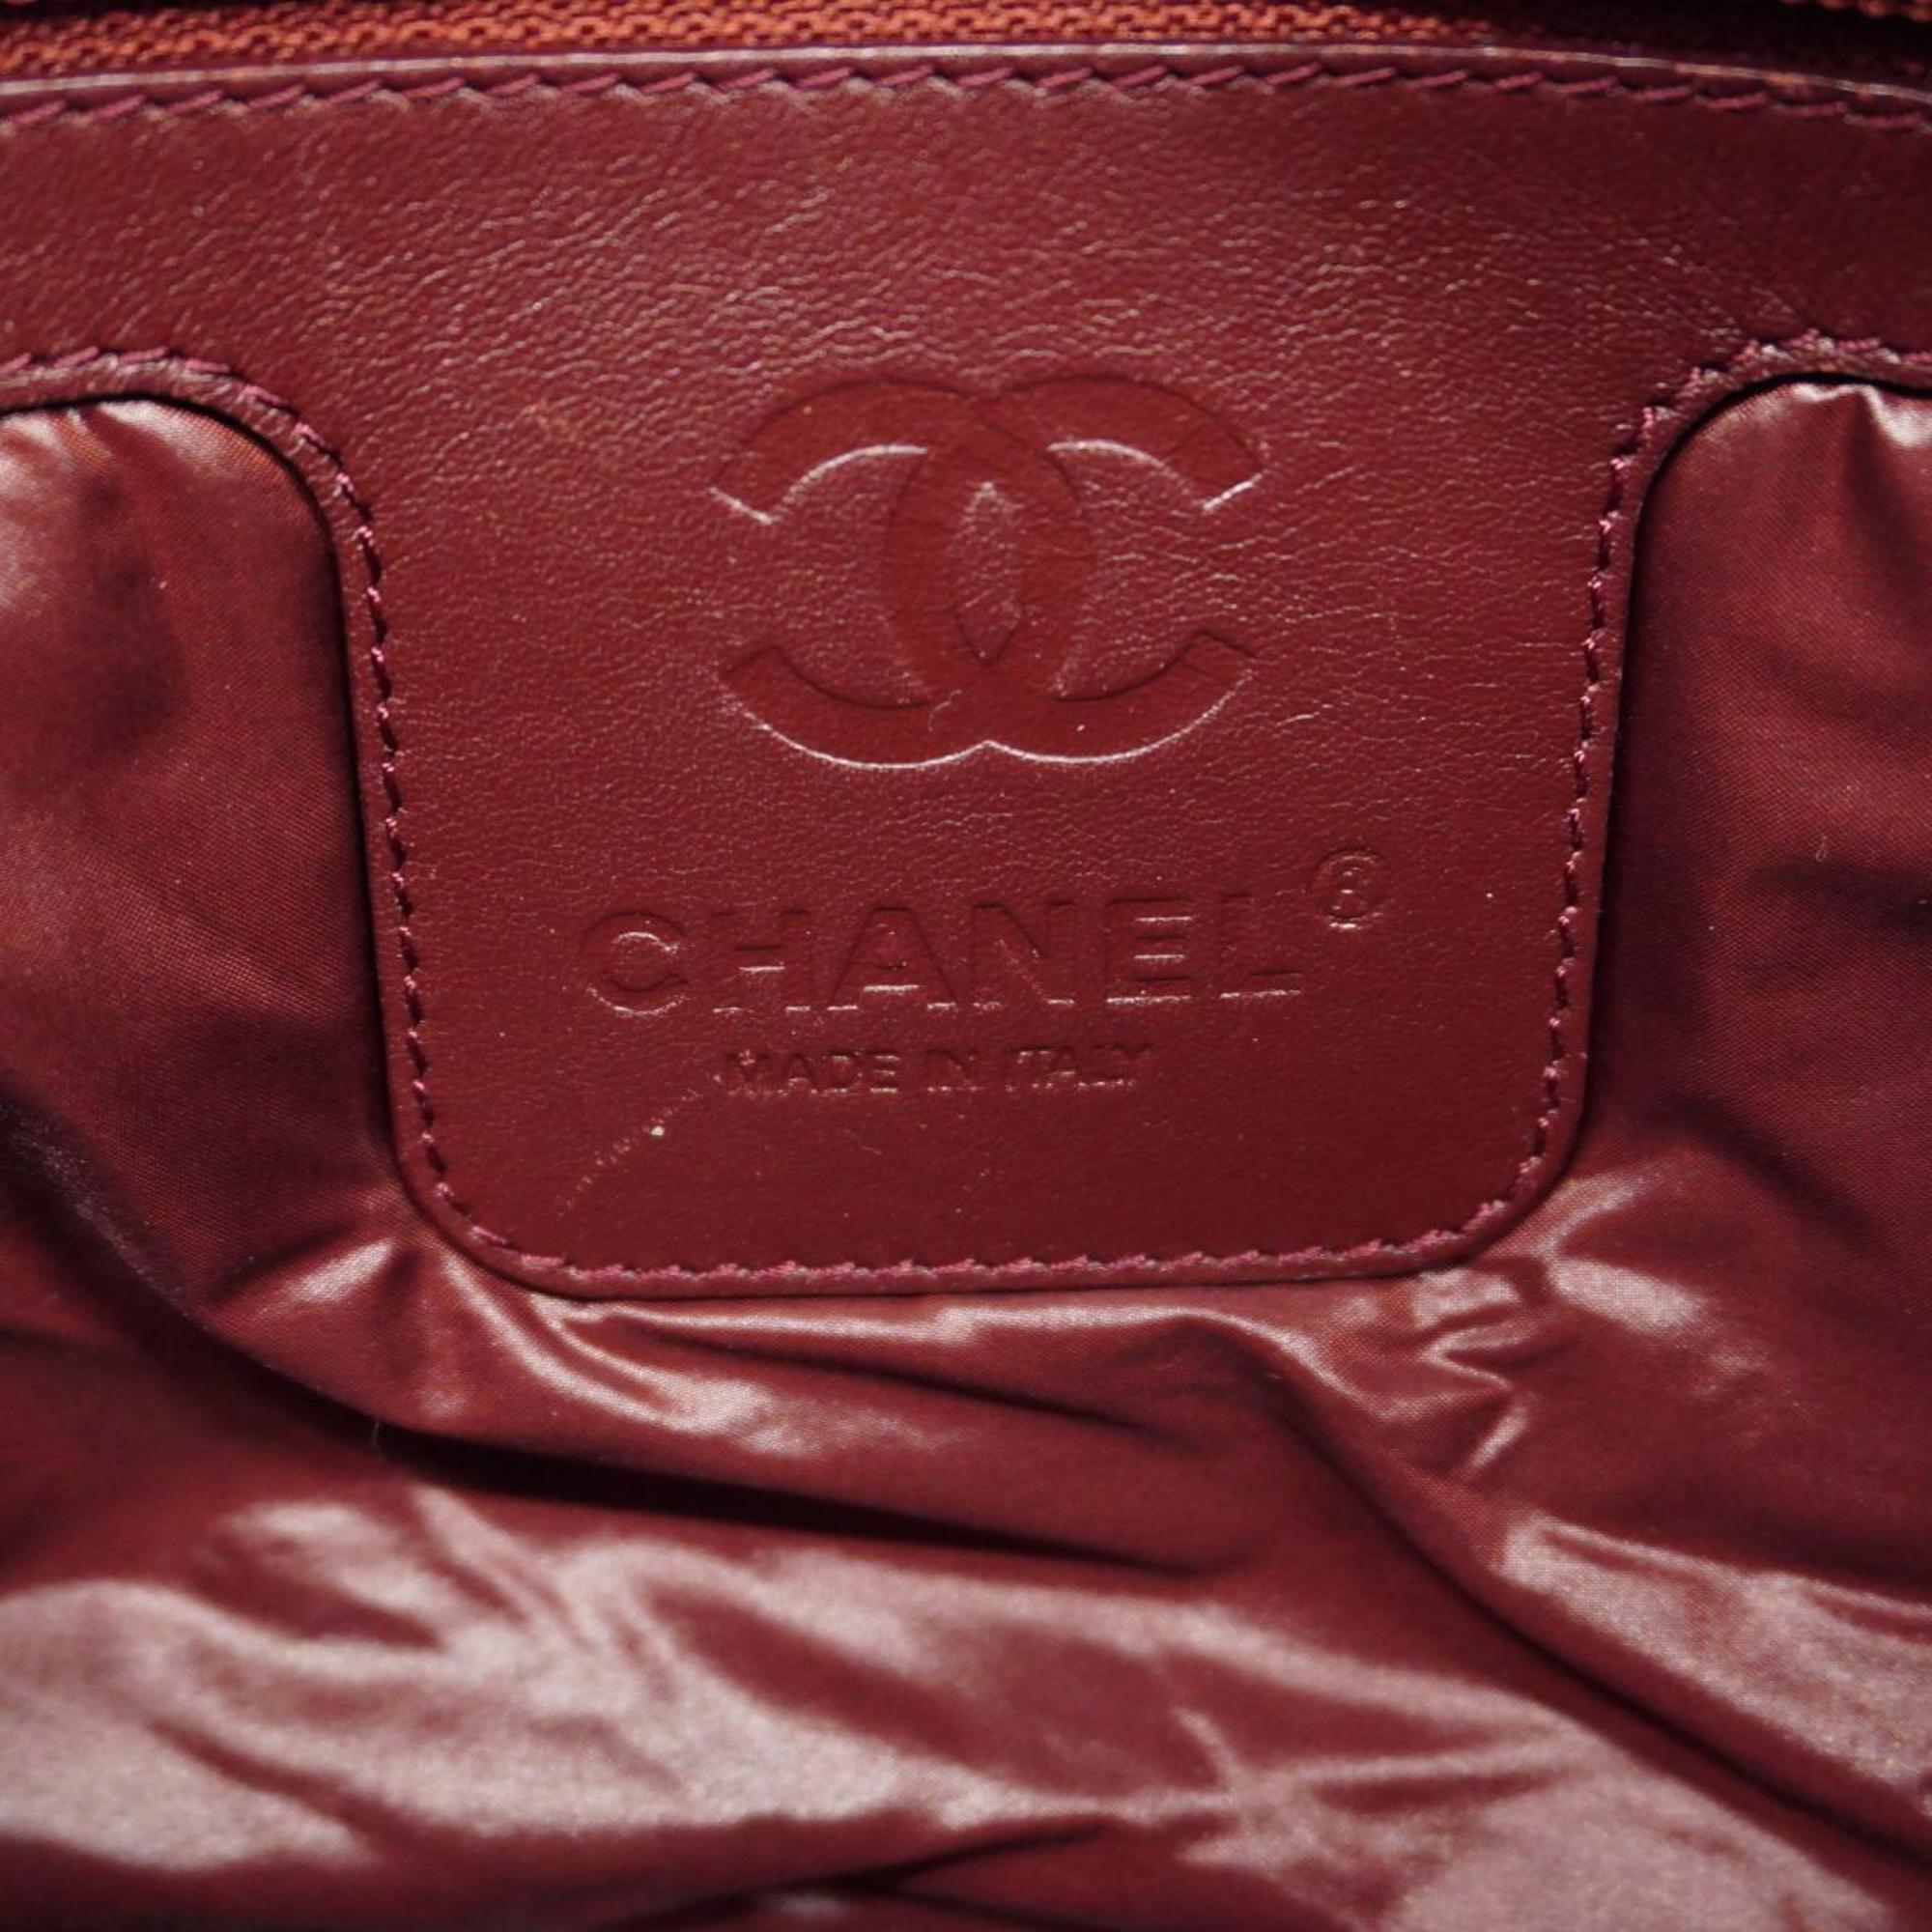 シャネル(Chanel) シャネル トートバッグ コココクーン ナイロン ブラック  レディース